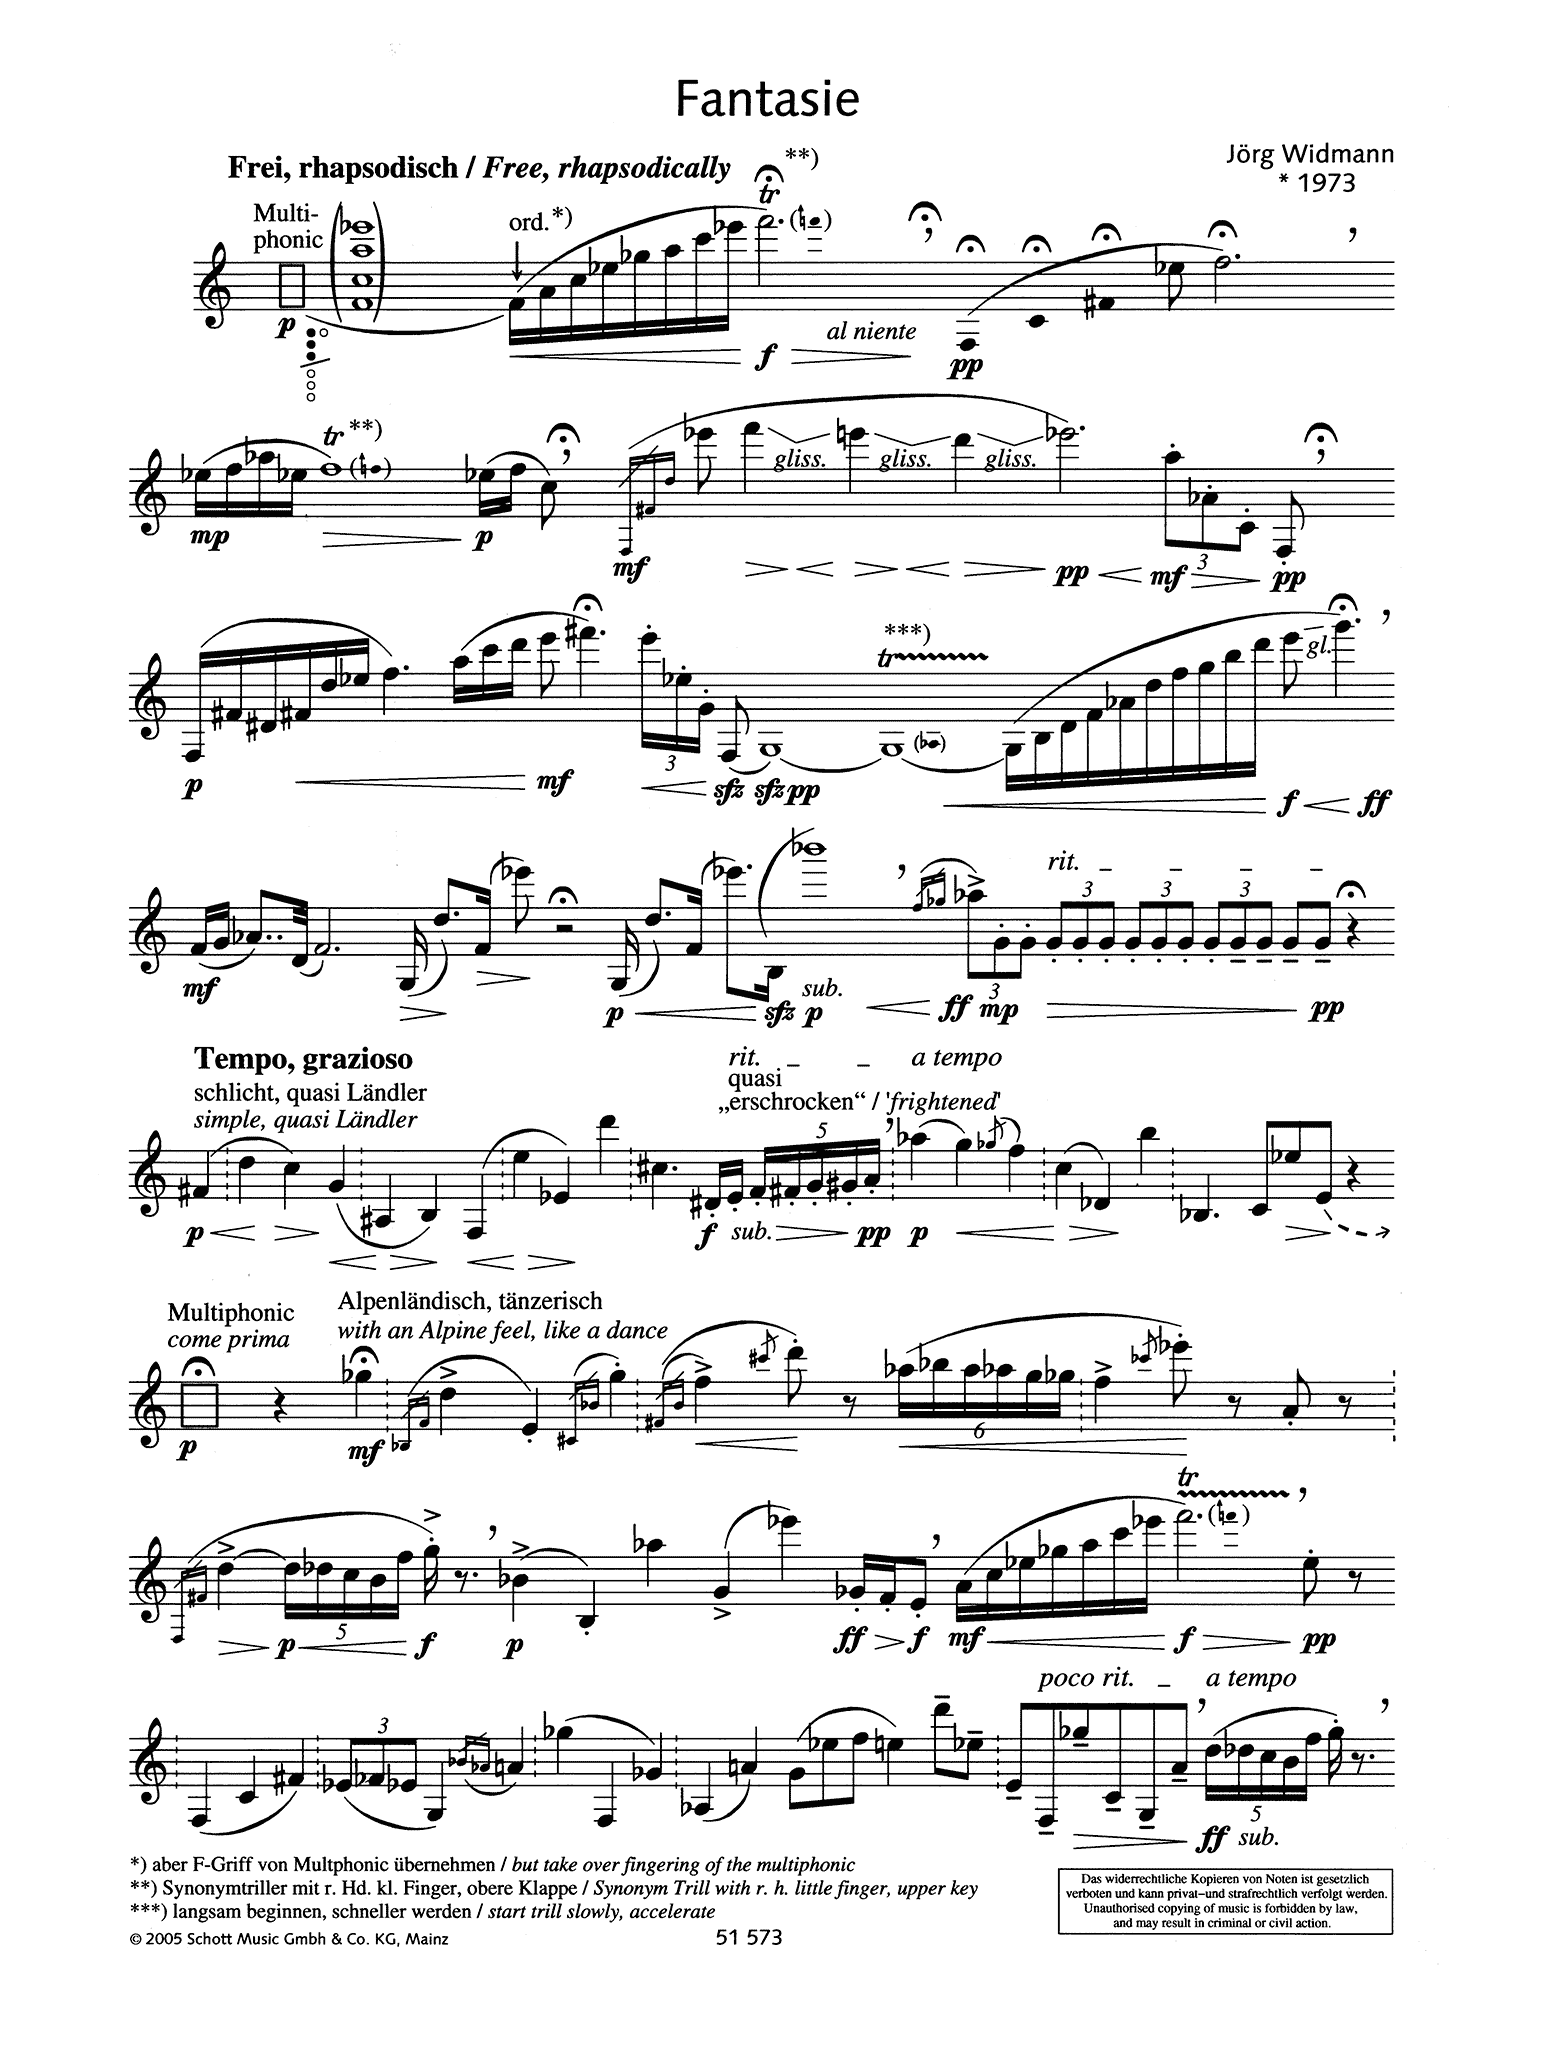 Jörg Widmann Fantasie clarinet unaccompanied page 1